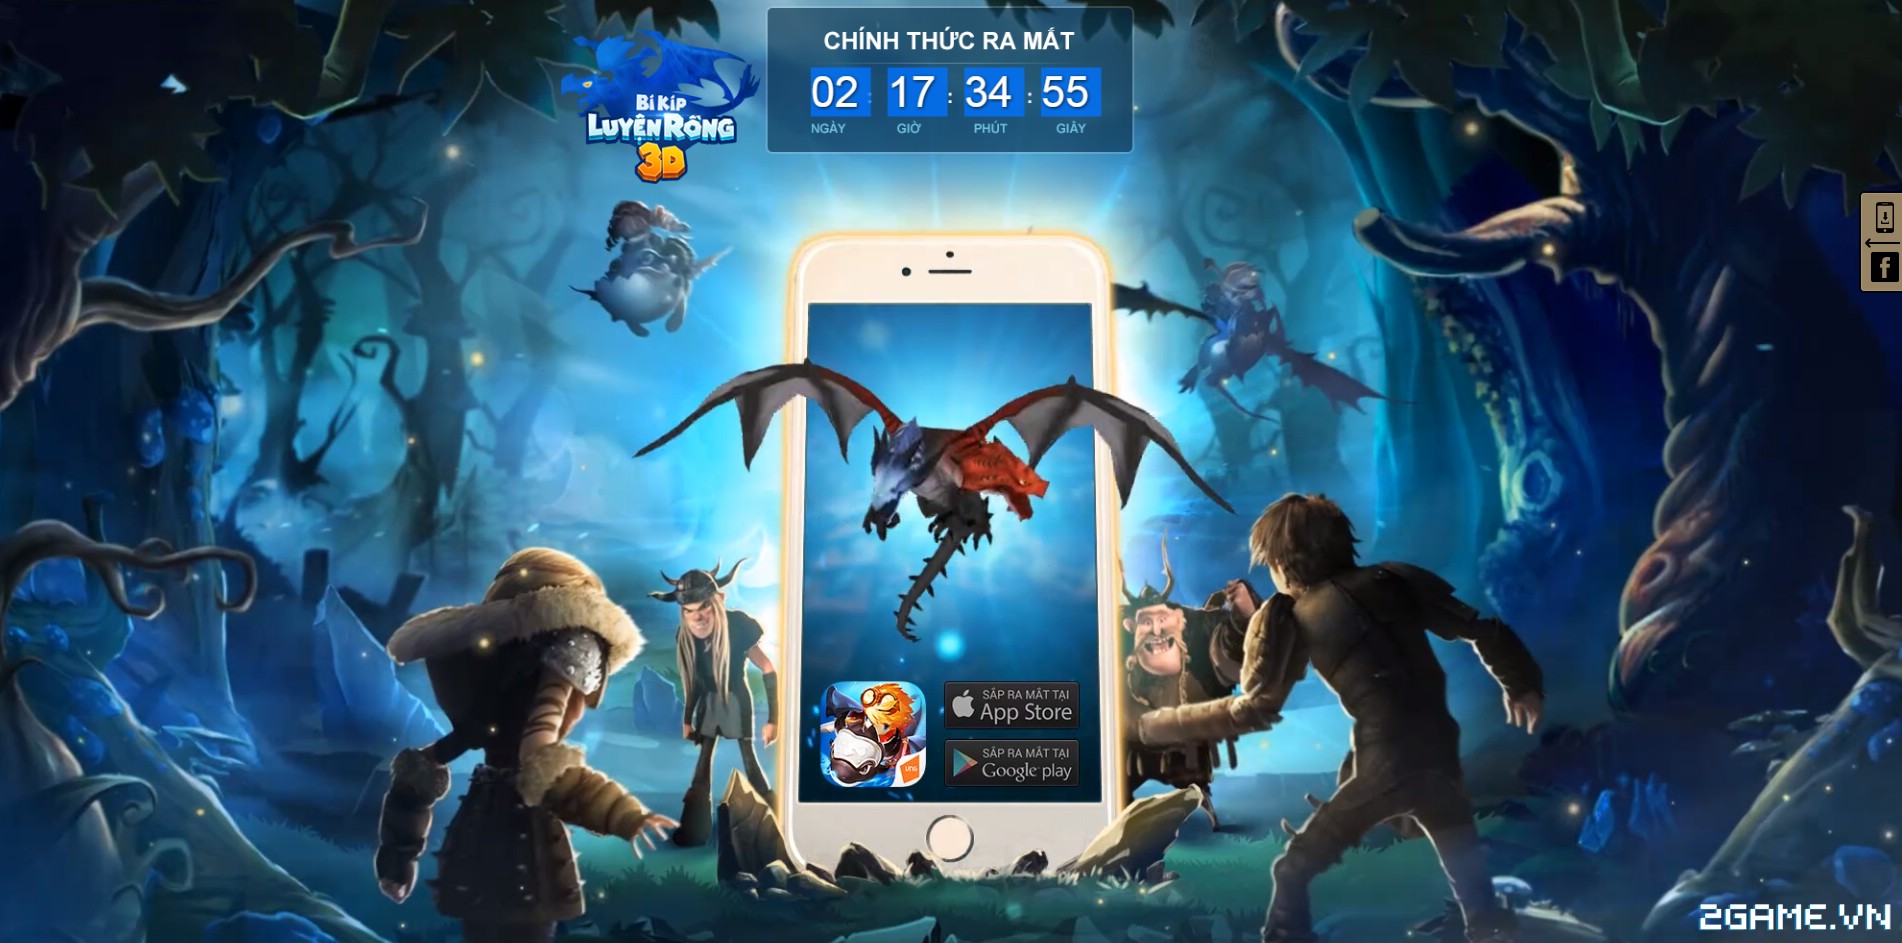 Xuất hiện trang teaser countdown của game Bí Kíp Luyện Rồng 3D vào chiều nay